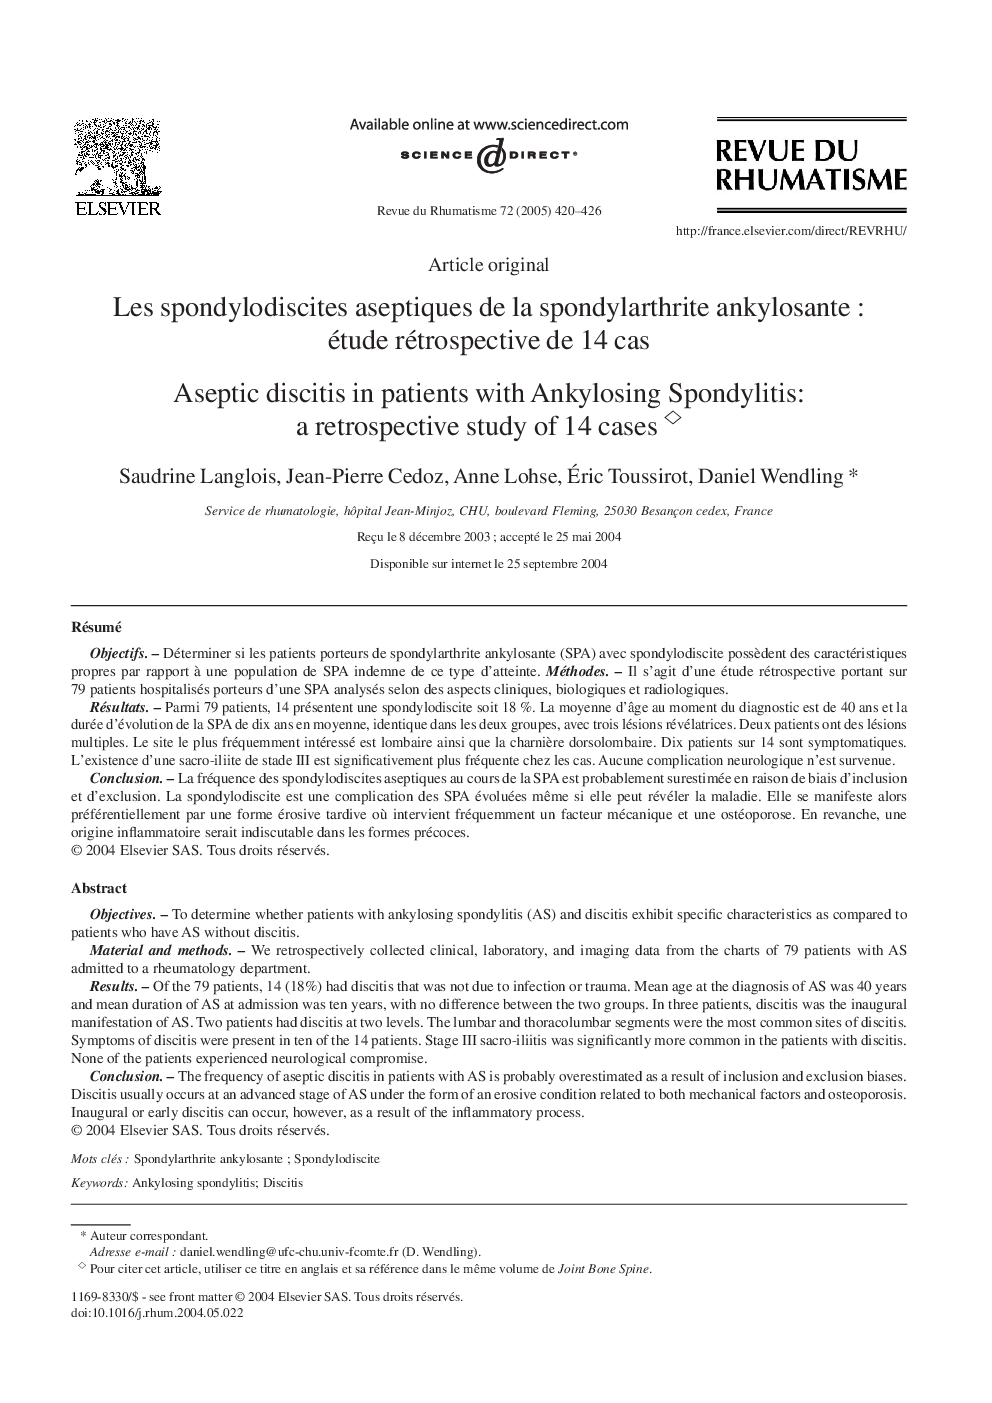 Les spondylodiscites aseptiques de la spondylarthrite ankylosante : étude rétrospective de 14 cas